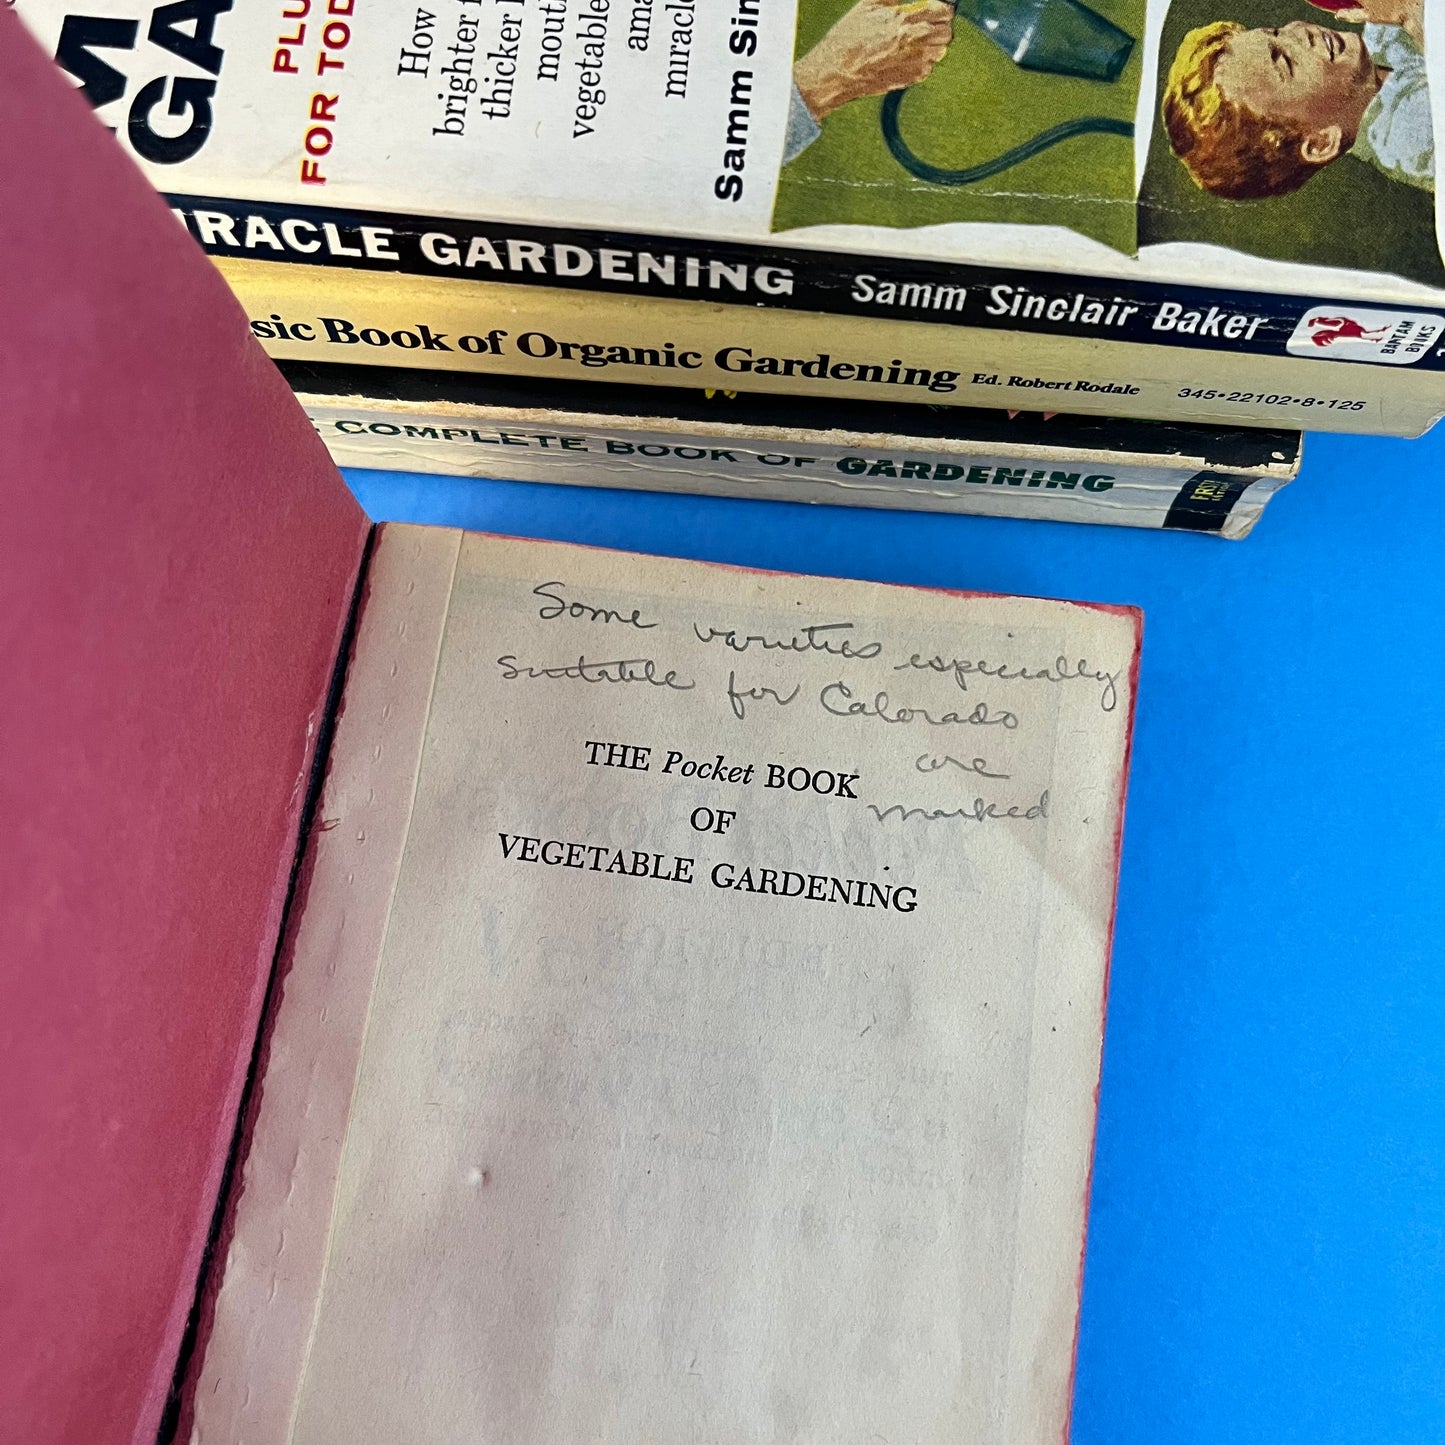 Vintage Gardening Manuals (Set of 4)